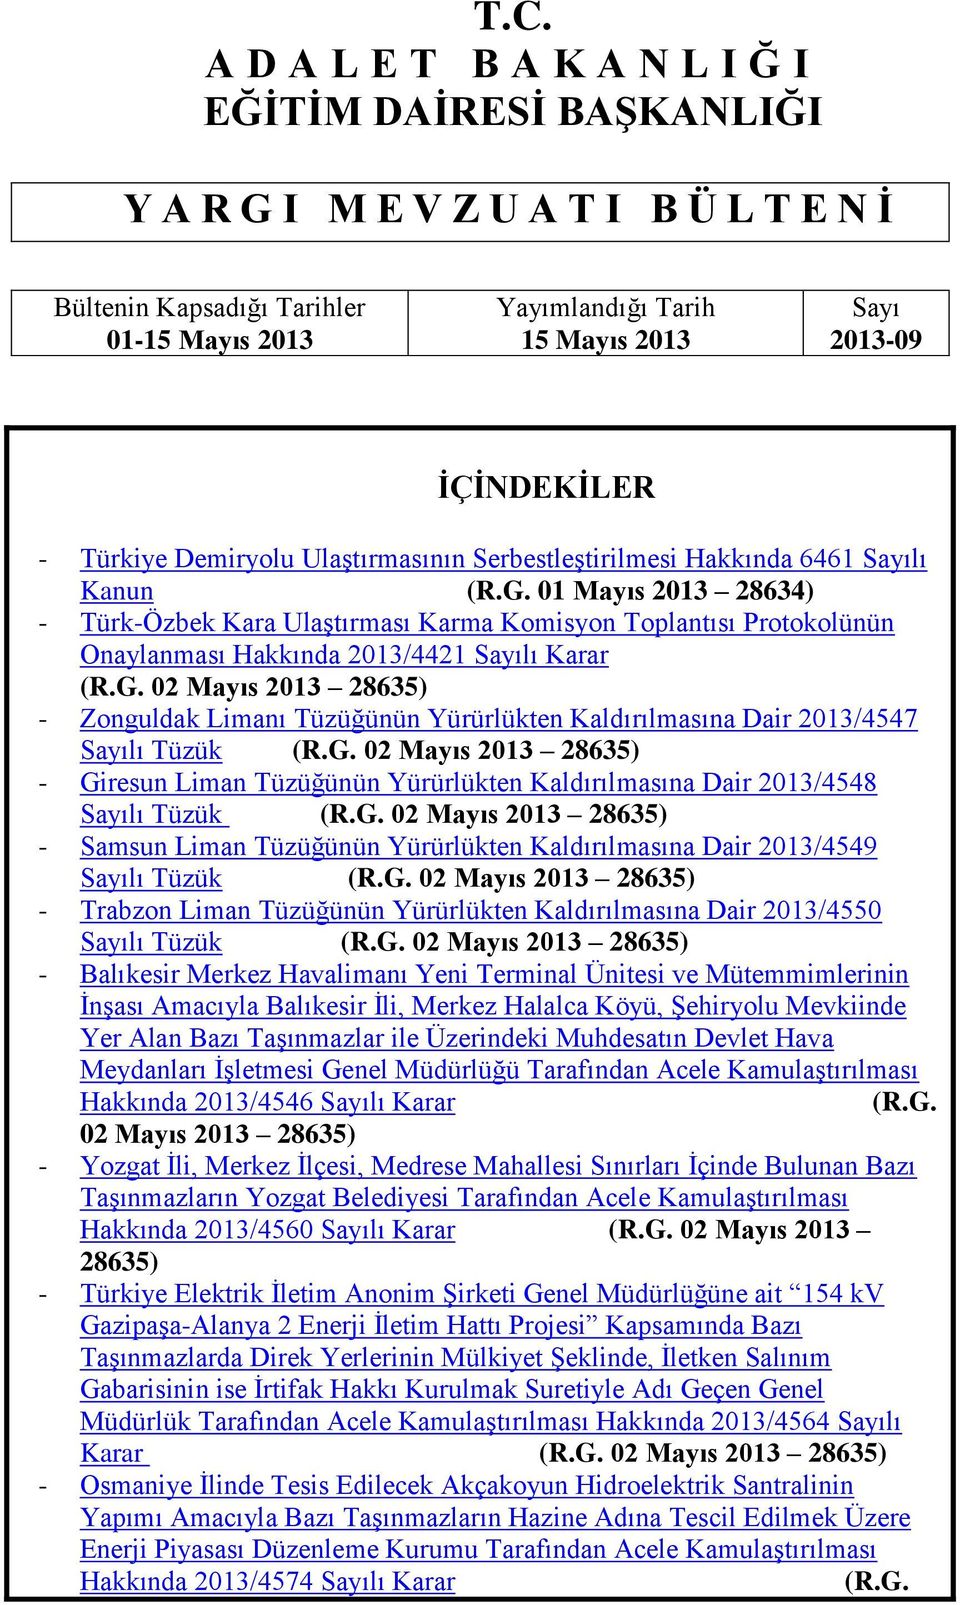 01 Mayıs 2013 28634) - Türk-Özbek Kara UlaĢtırması Karma Komisyon Toplantısı Protokolünün Onaylanması Hakkında 2013/4421 Sayılı Karar (R.G.